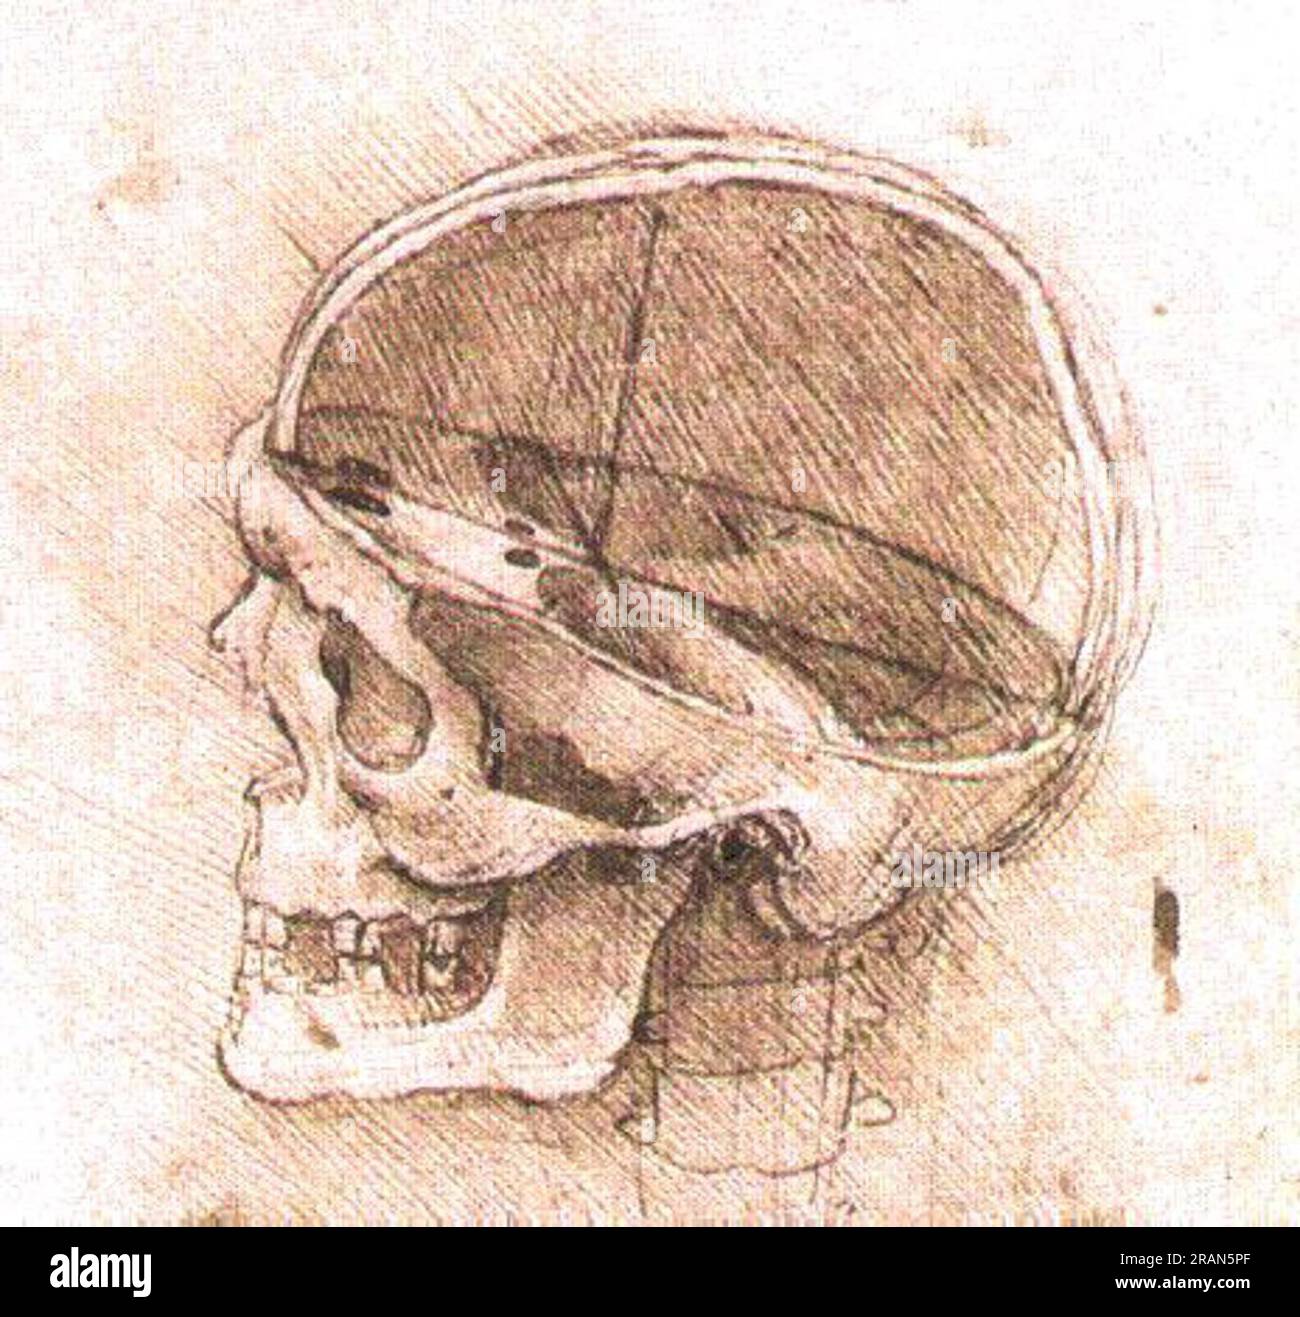 Vue d'un crâne vers 1500 ; Italie de Léonard de Vinci Banque D'Images